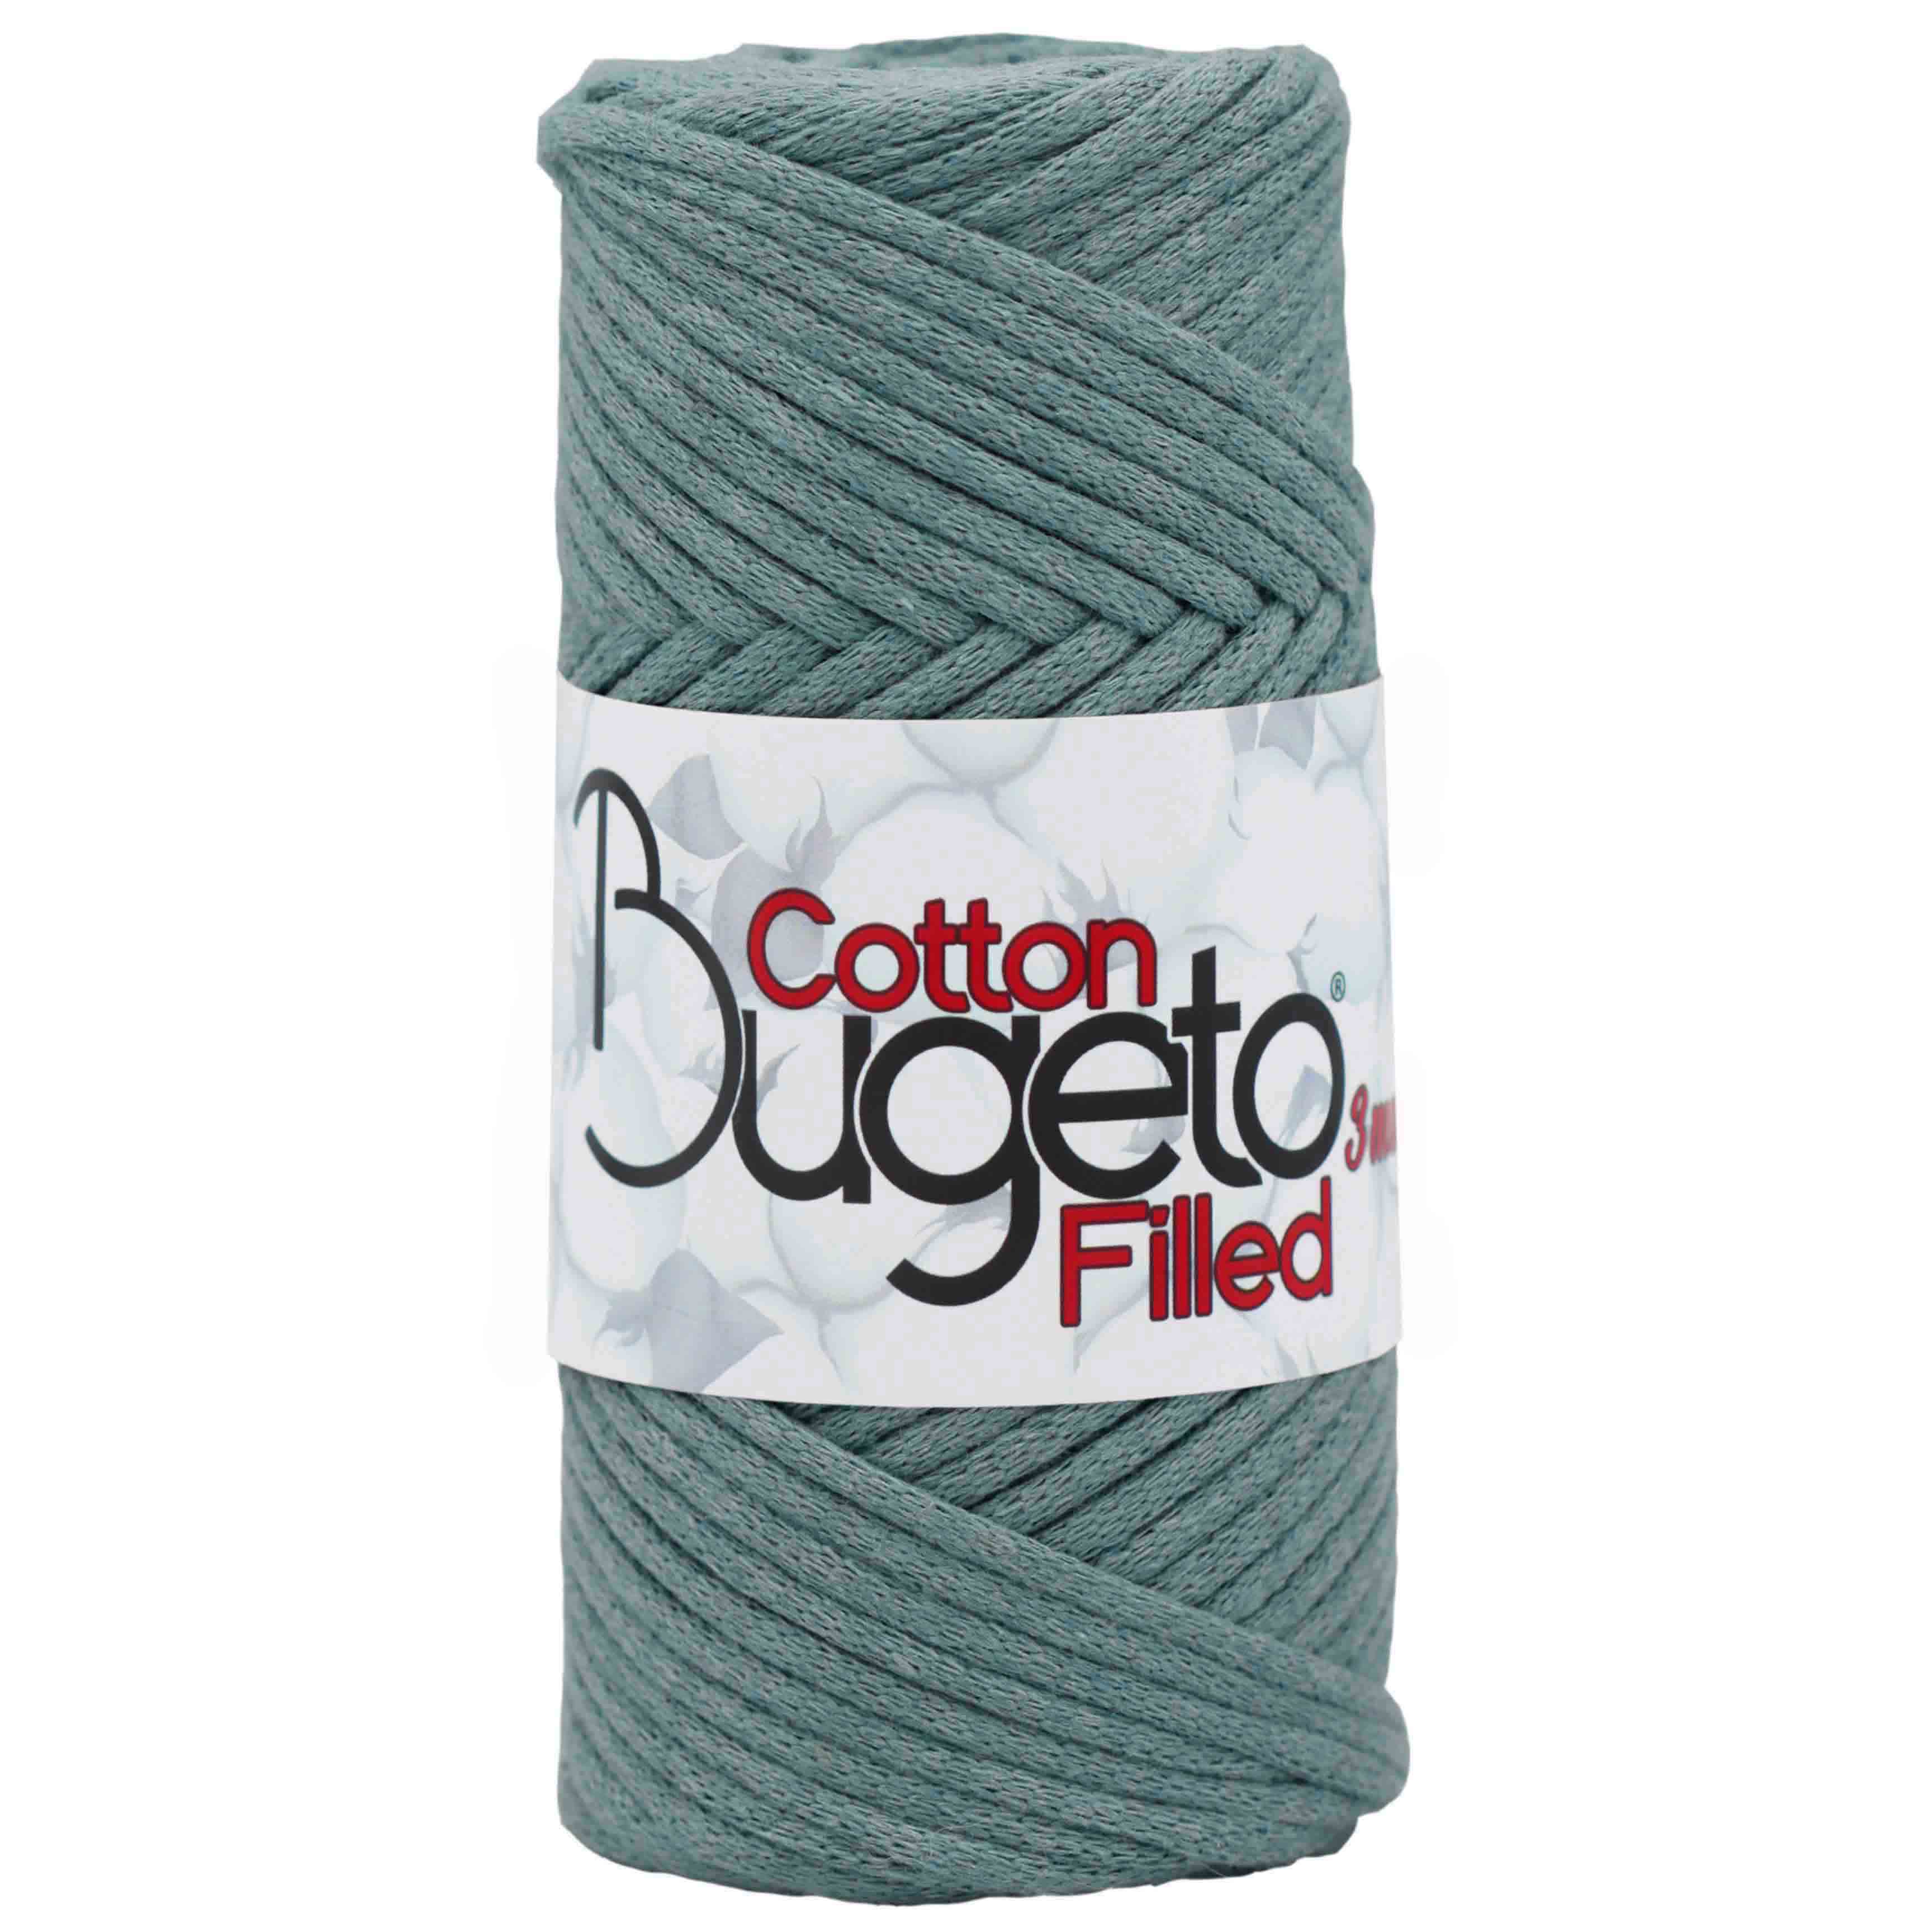 cotton filled yarns 3mm yarns bugeto yarn